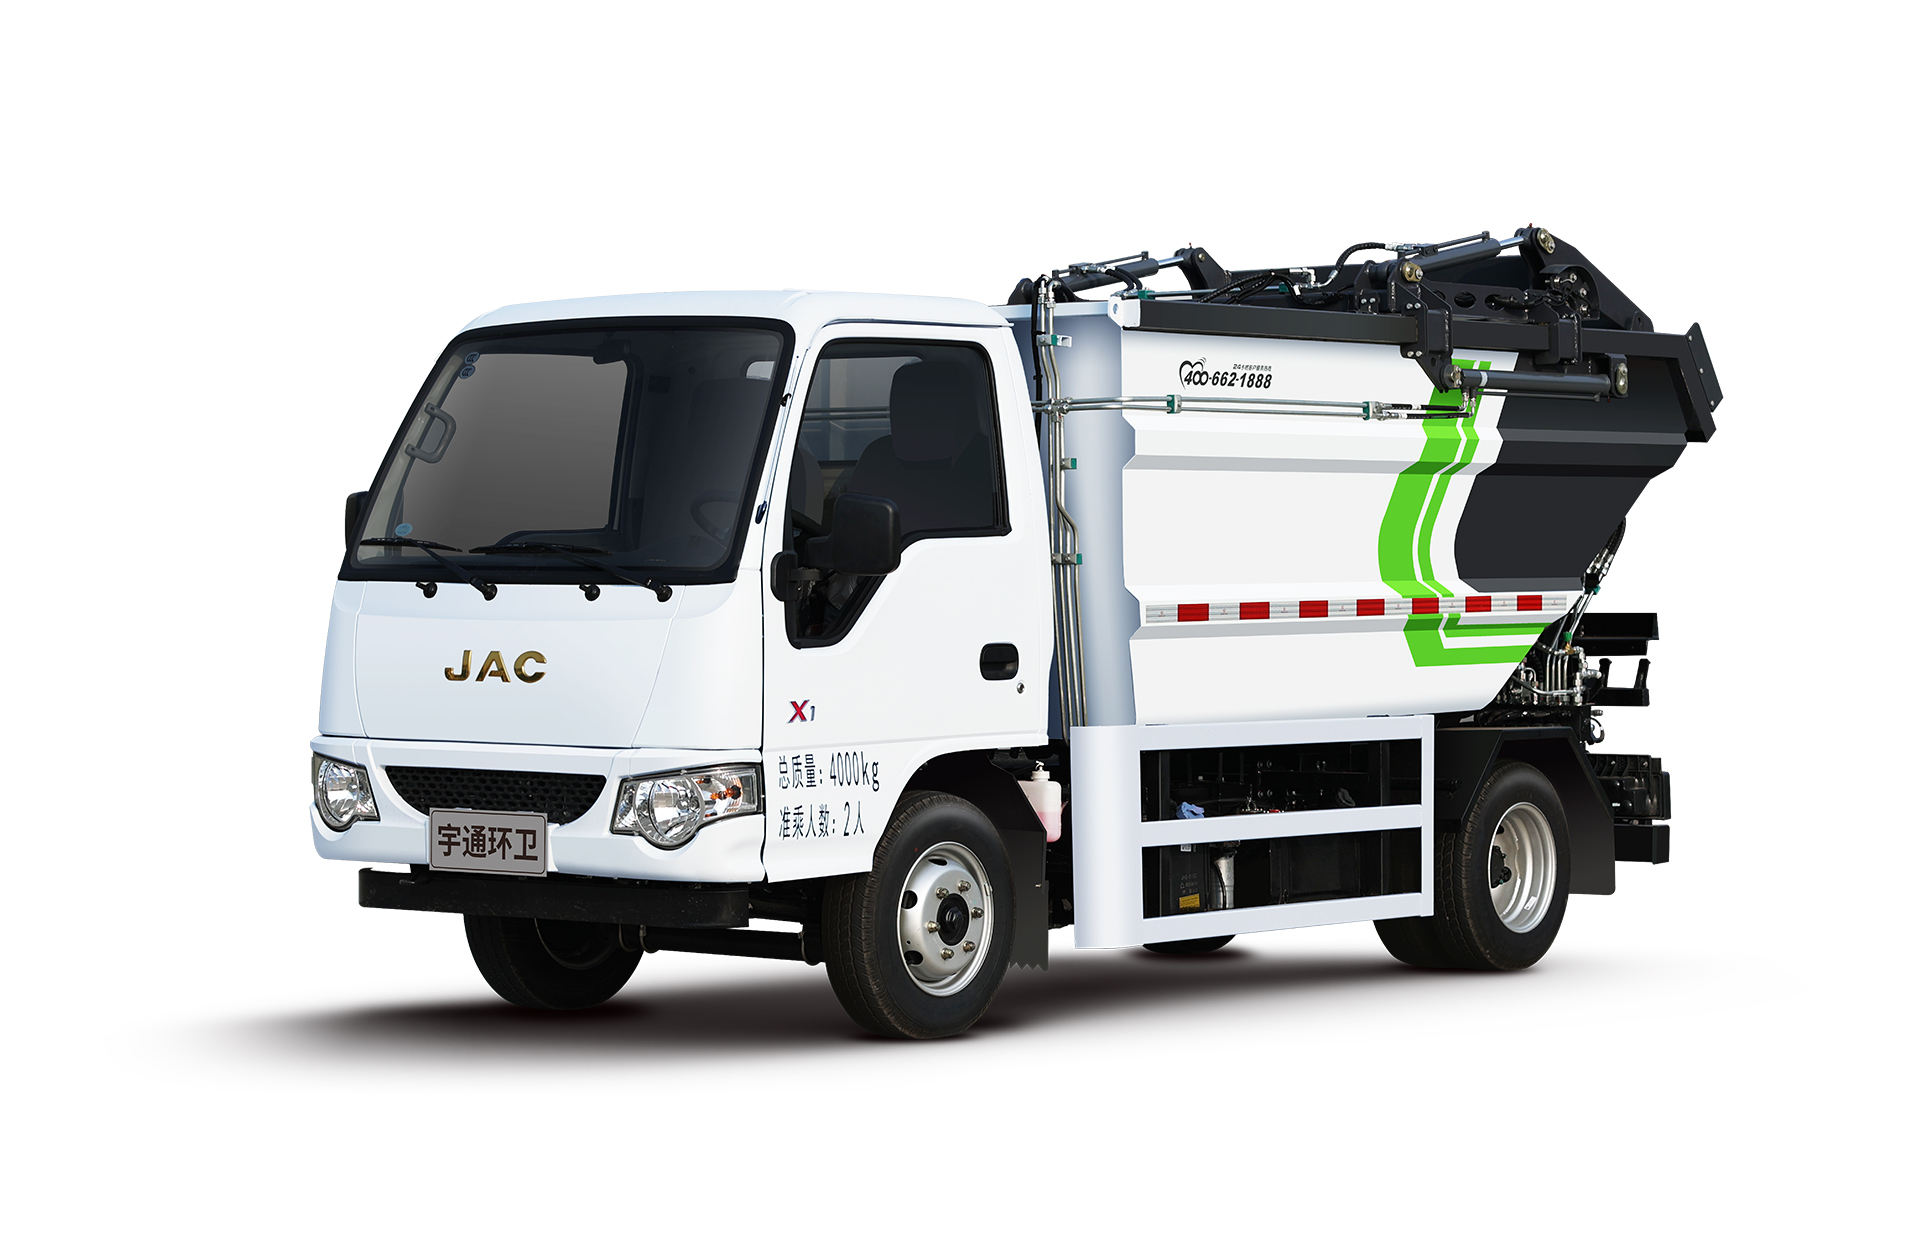 4t自裝卸式垃圾車 宇通環衛自裝卸式垃圾車主要具備小巧靈活、密封性、裝載能力強等主要特點。